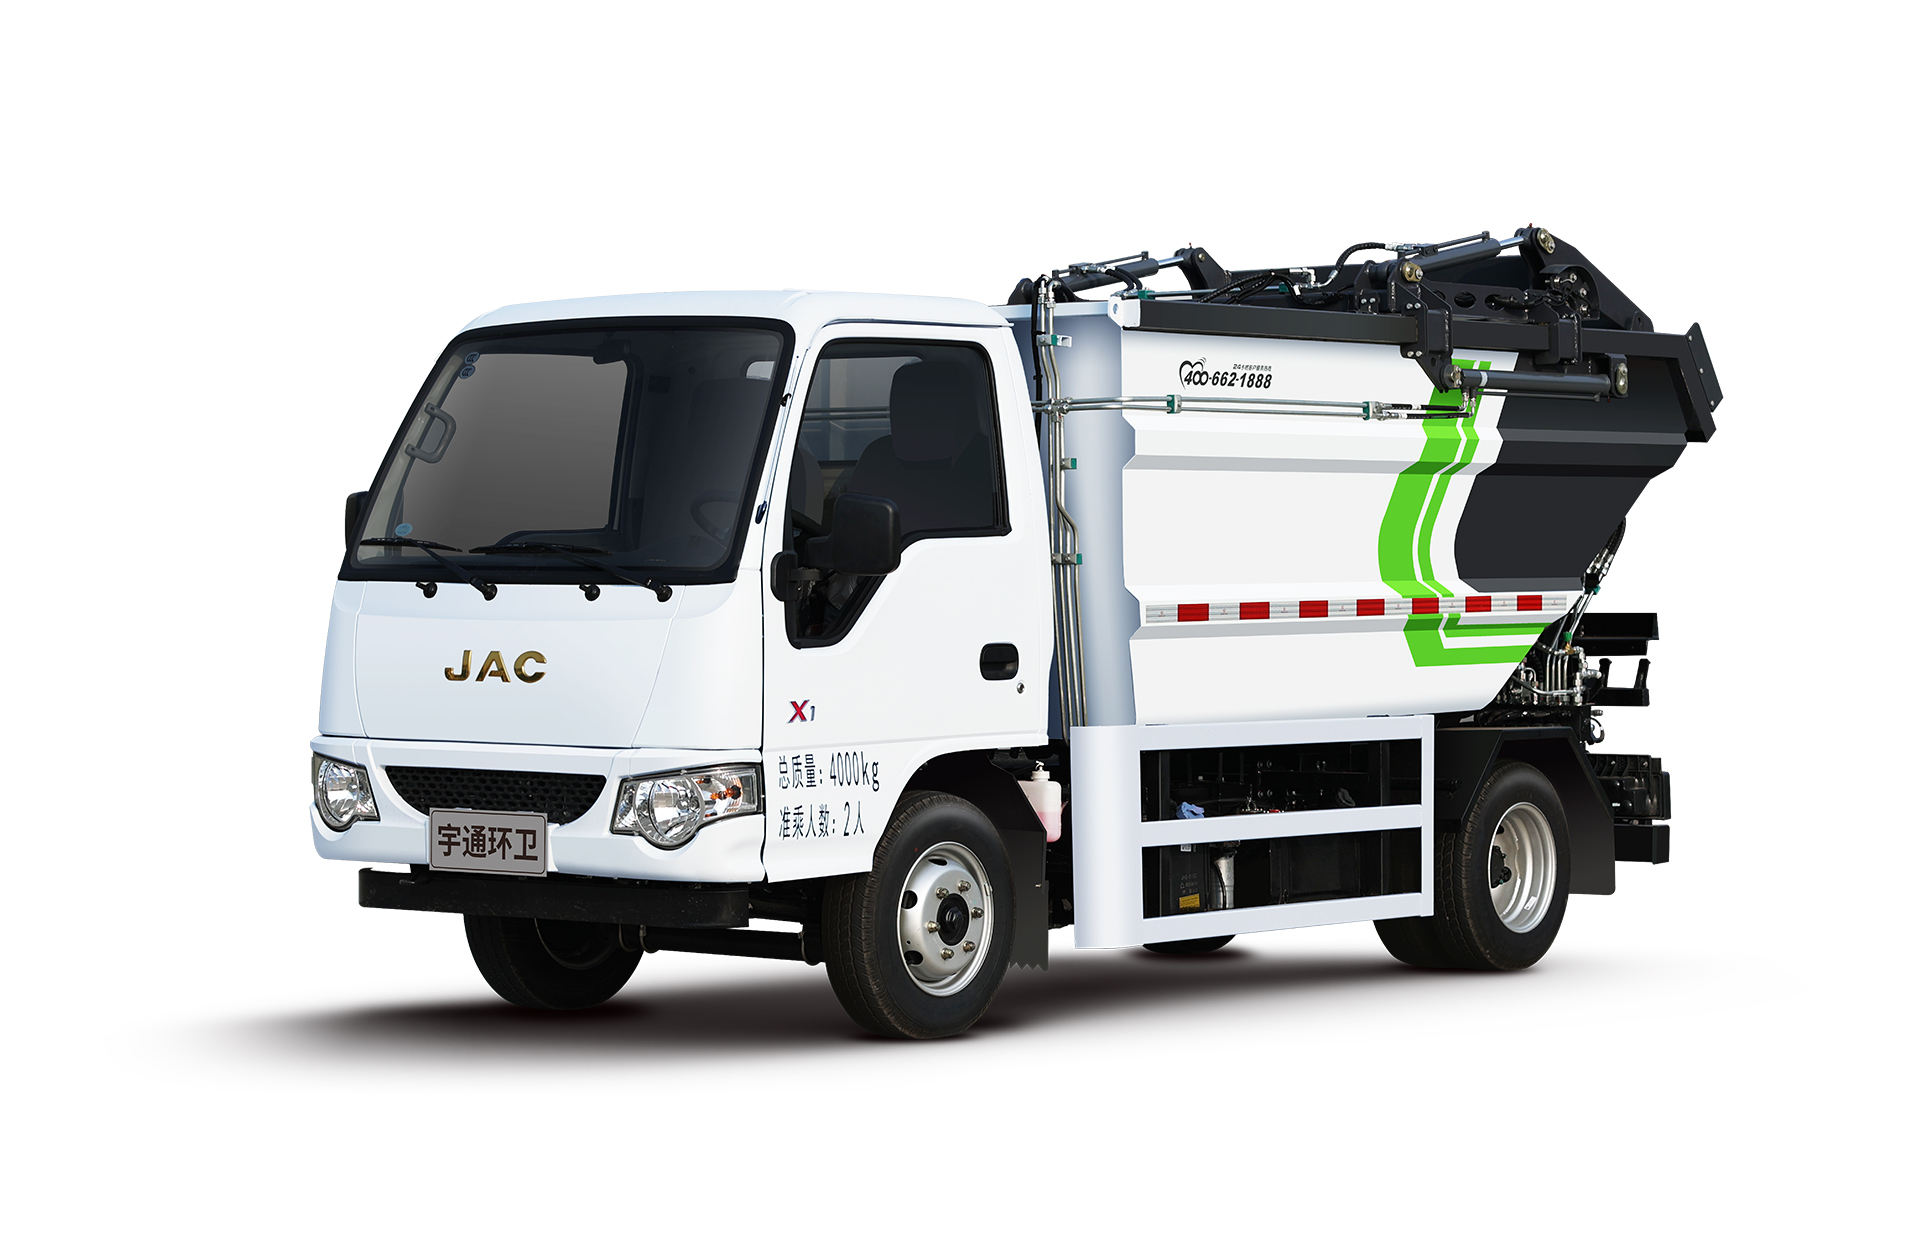 4t自裝卸式垃圾車 宇通環衛自裝卸式垃圾車主要具備小巧靈活、密封性、裝載能力強等主要特點。